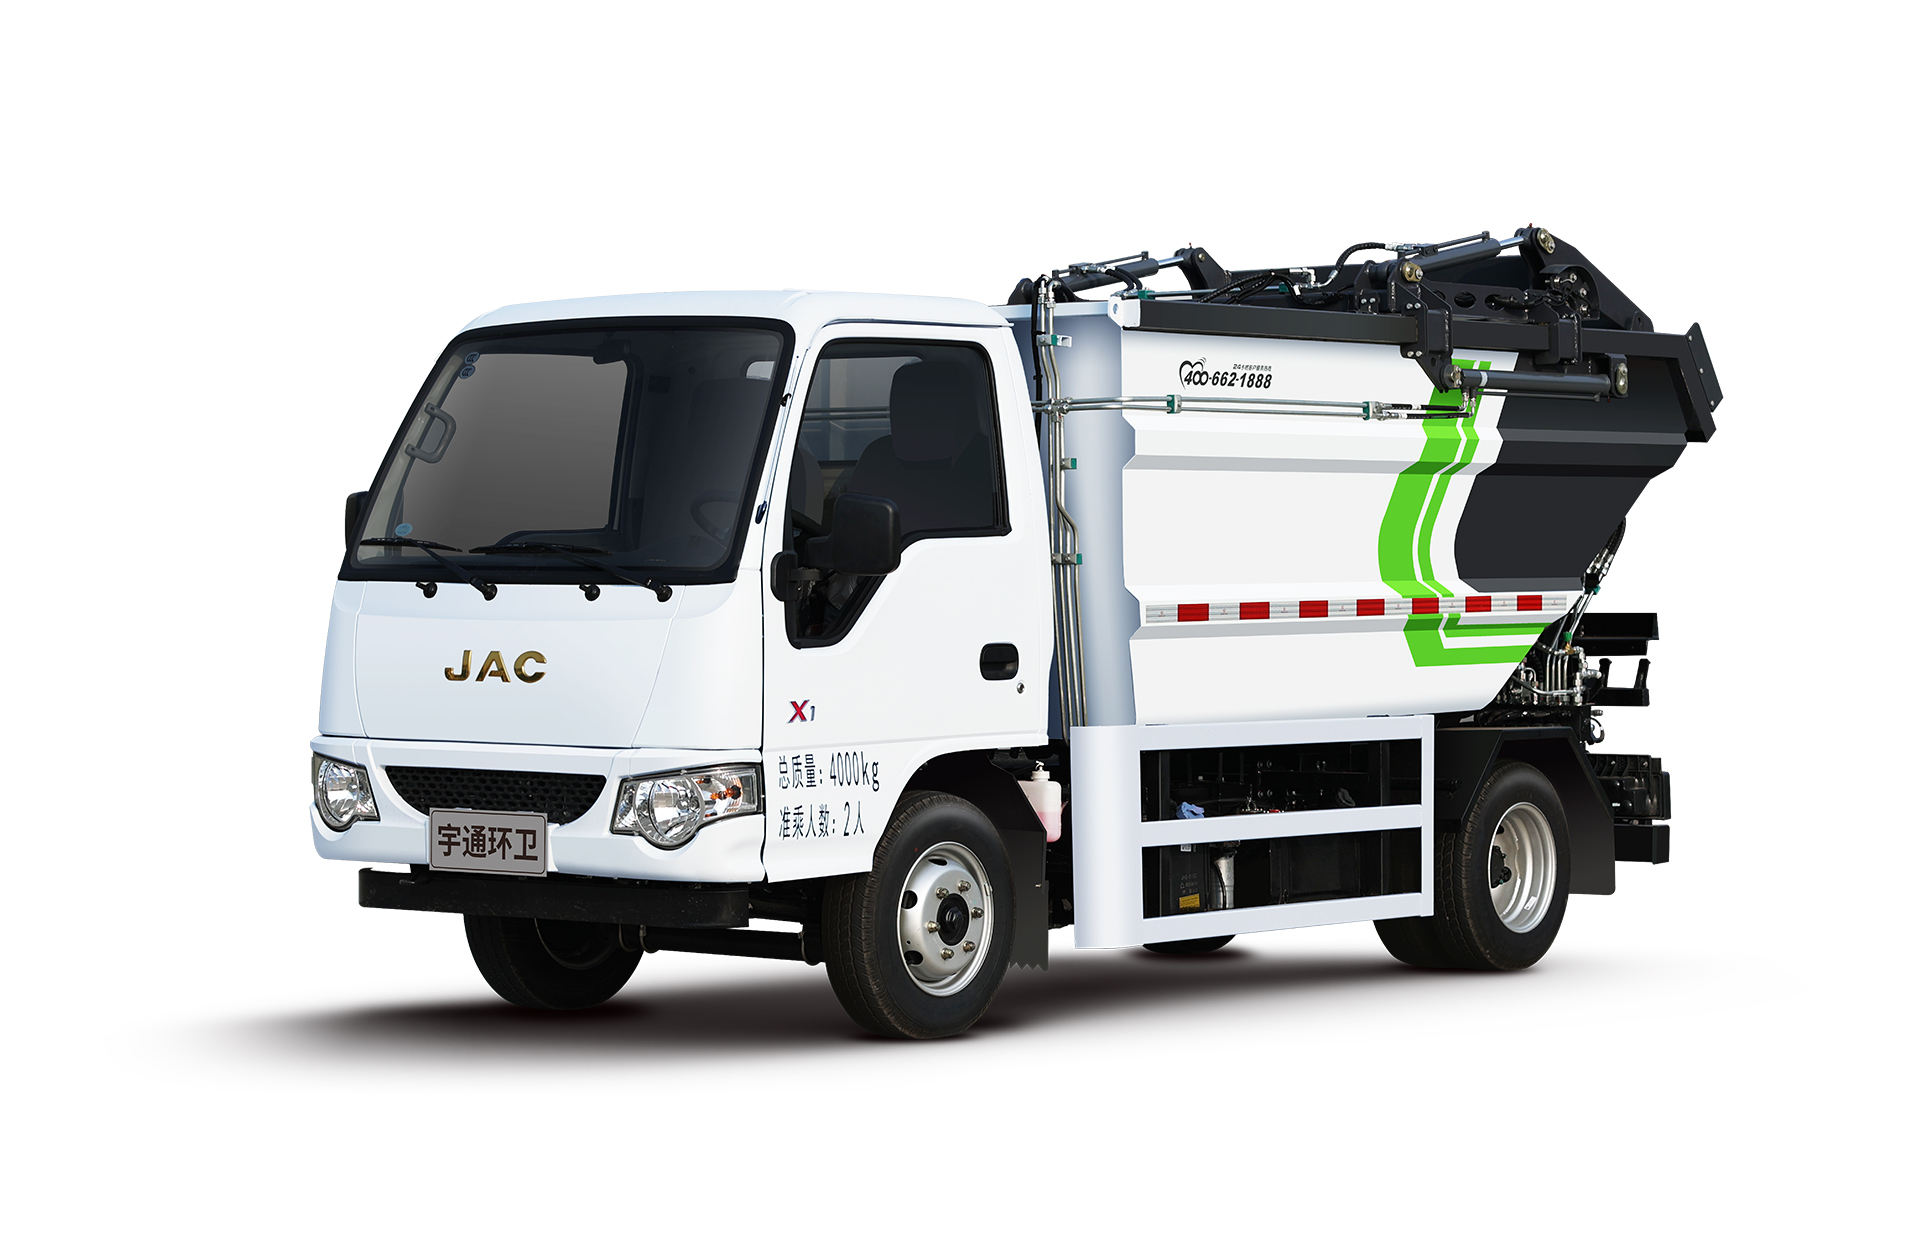 4t自裝卸式垃圾車 宇通環衛自裝卸式垃圾車主要具備小巧靈活、密封性、裝載能力強等主要特點。